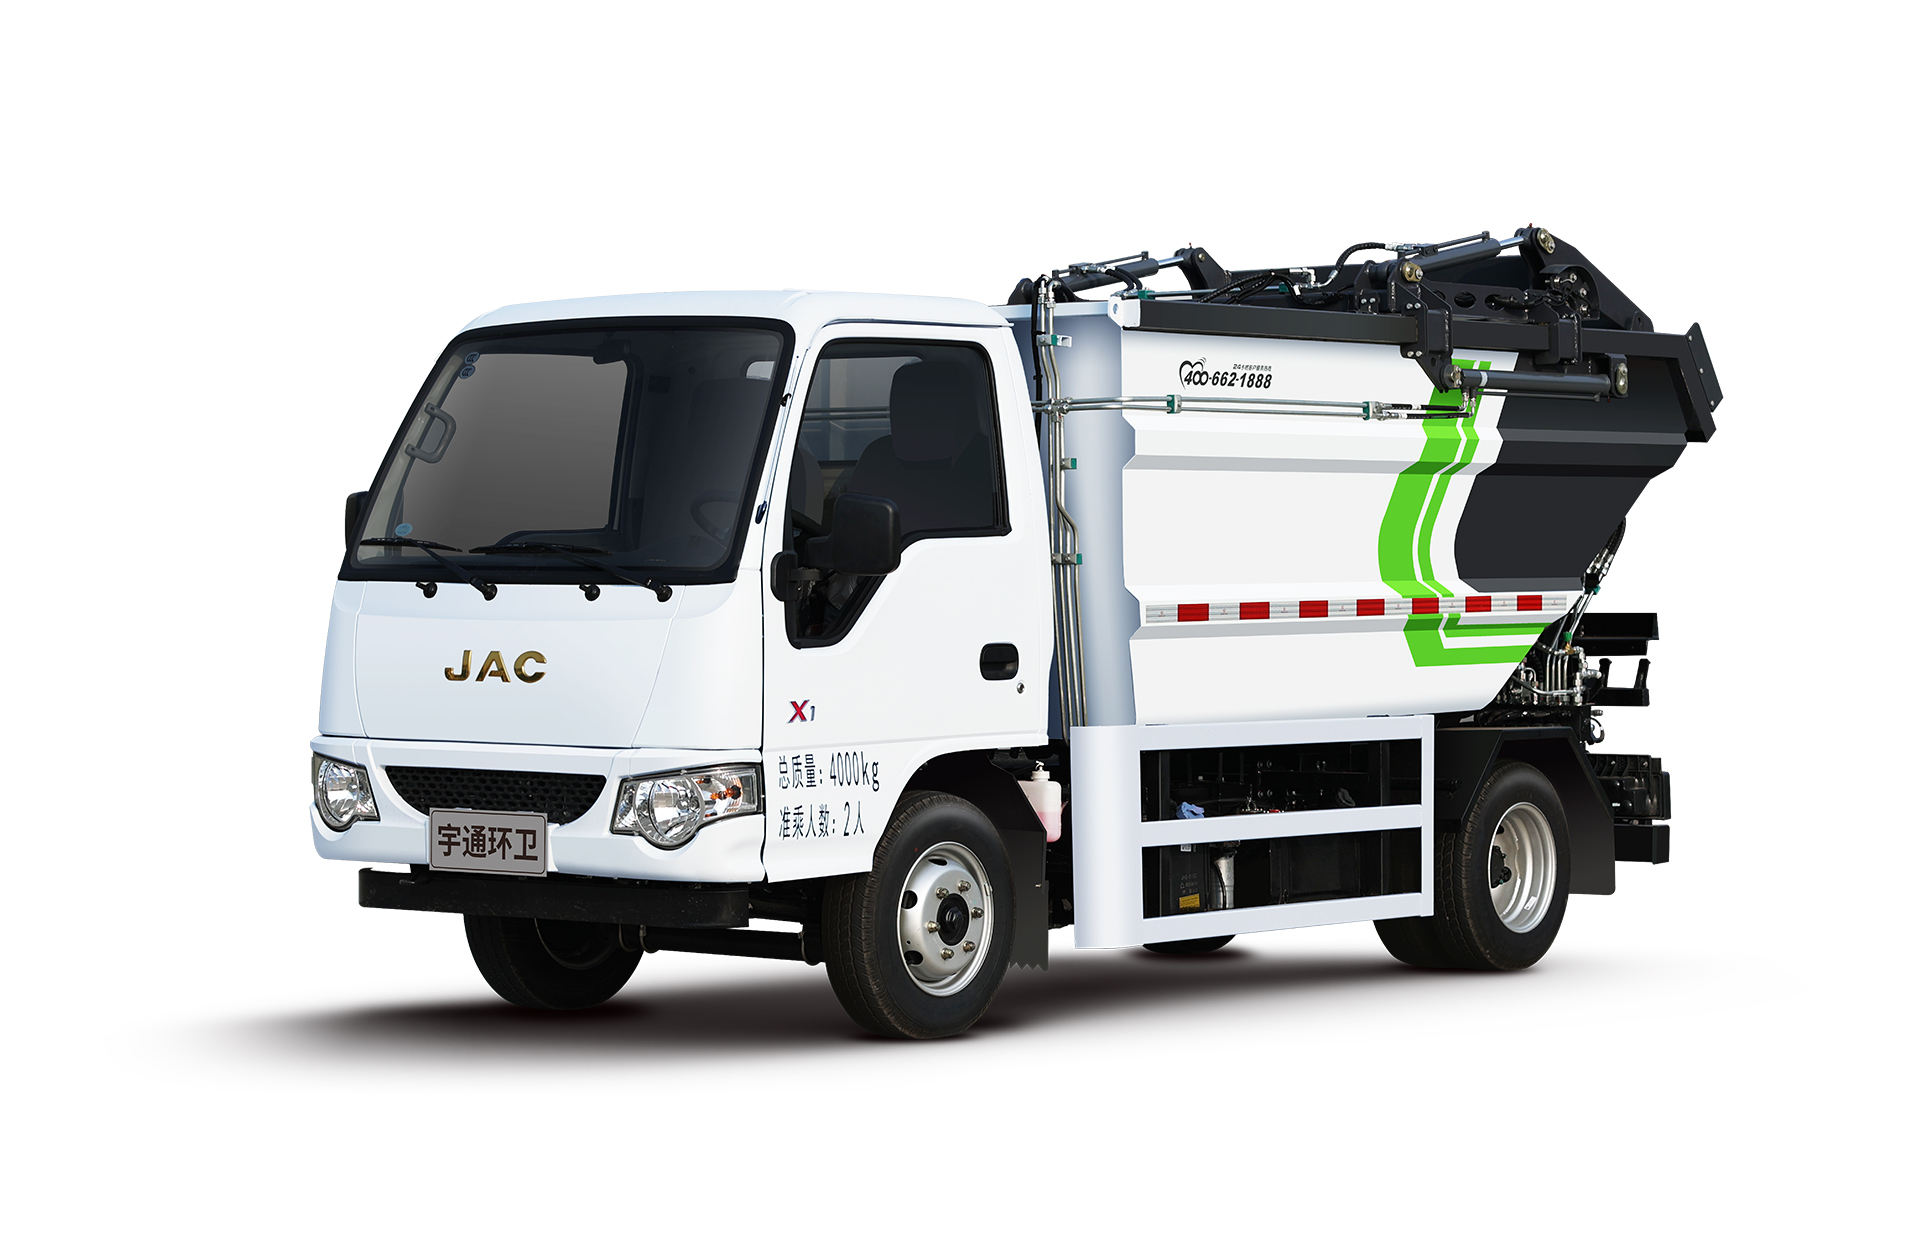 4t自裝卸式垃圾車 宇通環衛自裝卸式垃圾車主要具備小巧靈活、密封性、裝載能力強等主要特點。